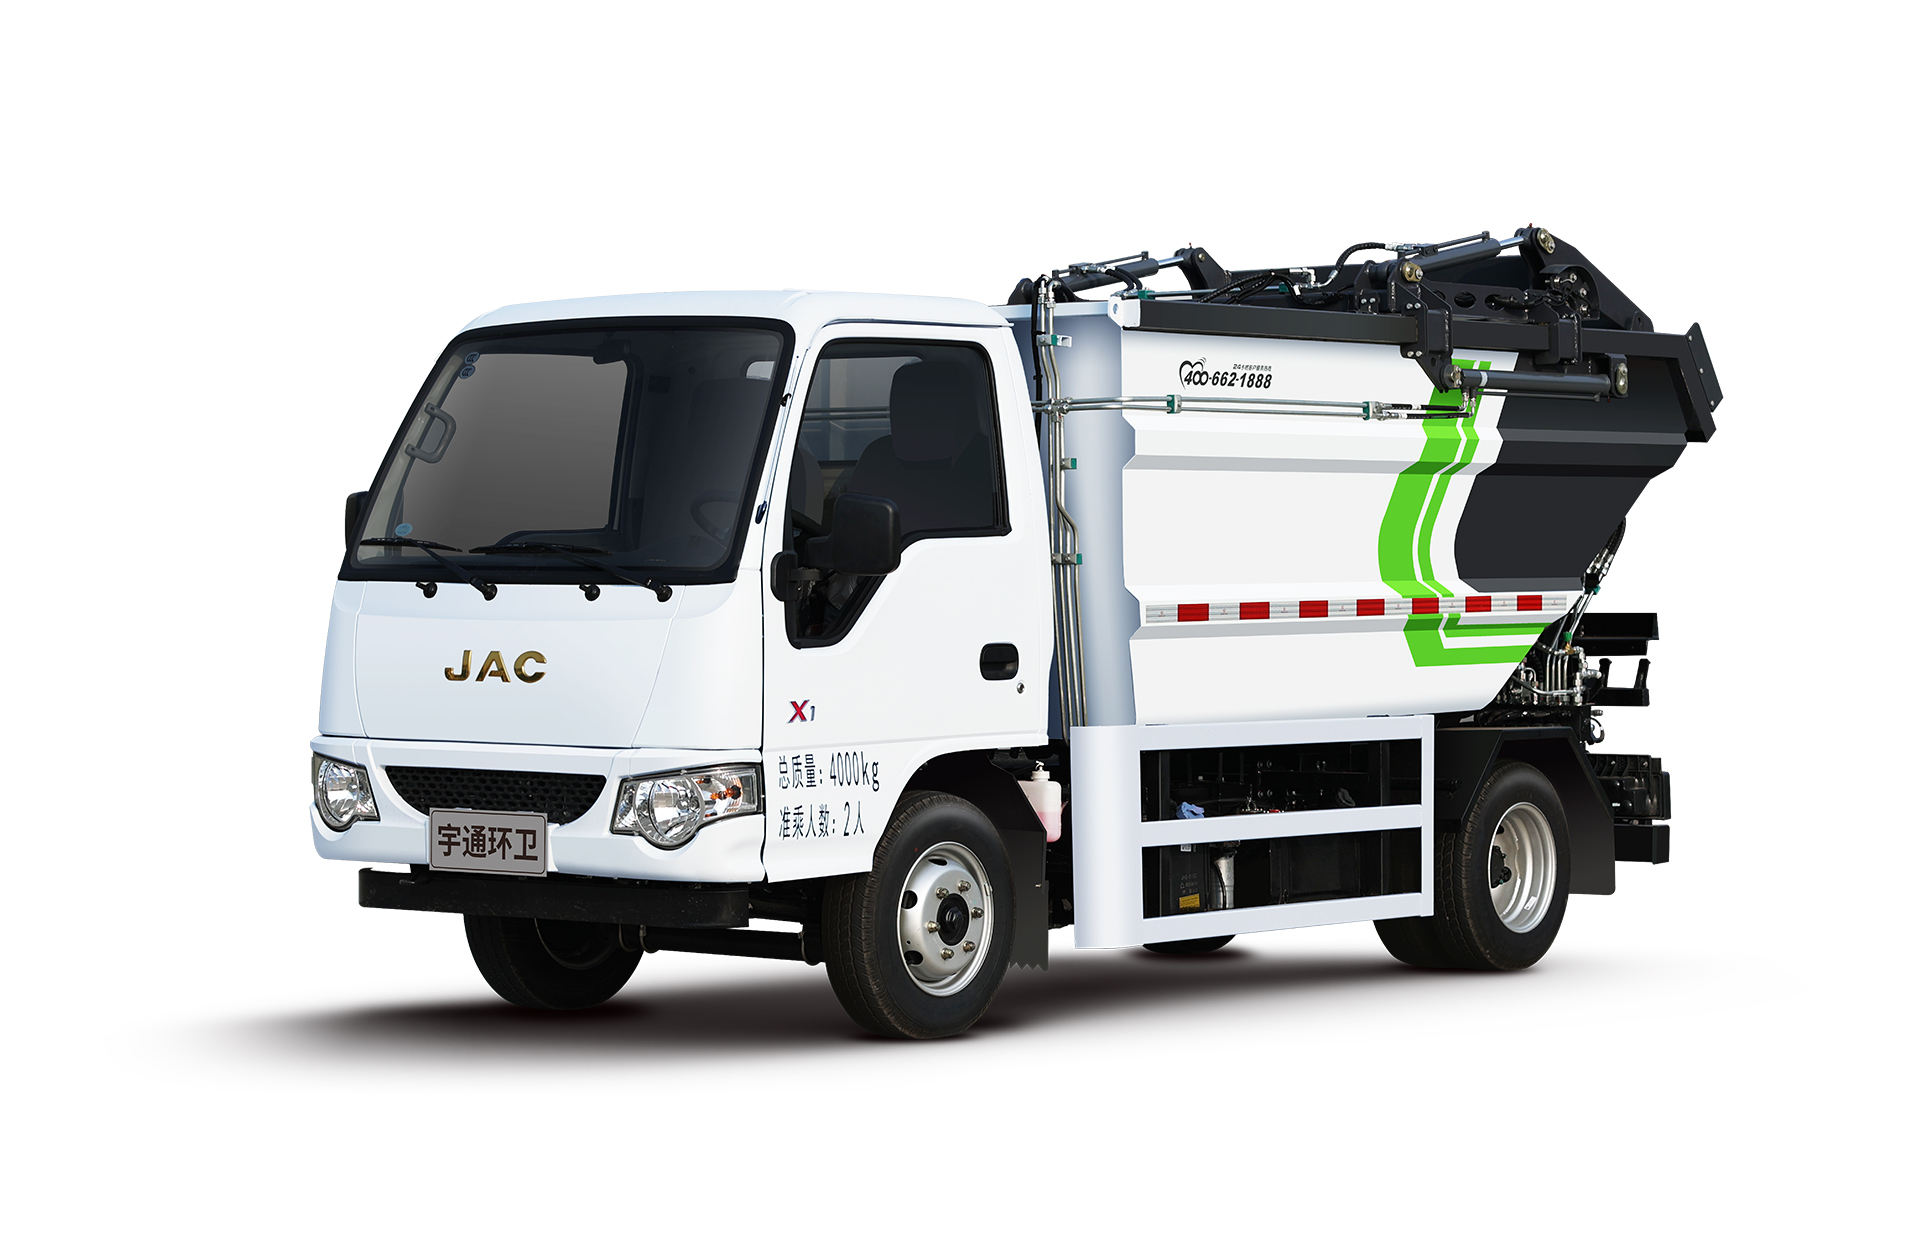 4t自裝卸式垃圾車 宇通環衛自裝卸式垃圾車主要具備小巧靈活、密封性、裝載能力強等主要特點。